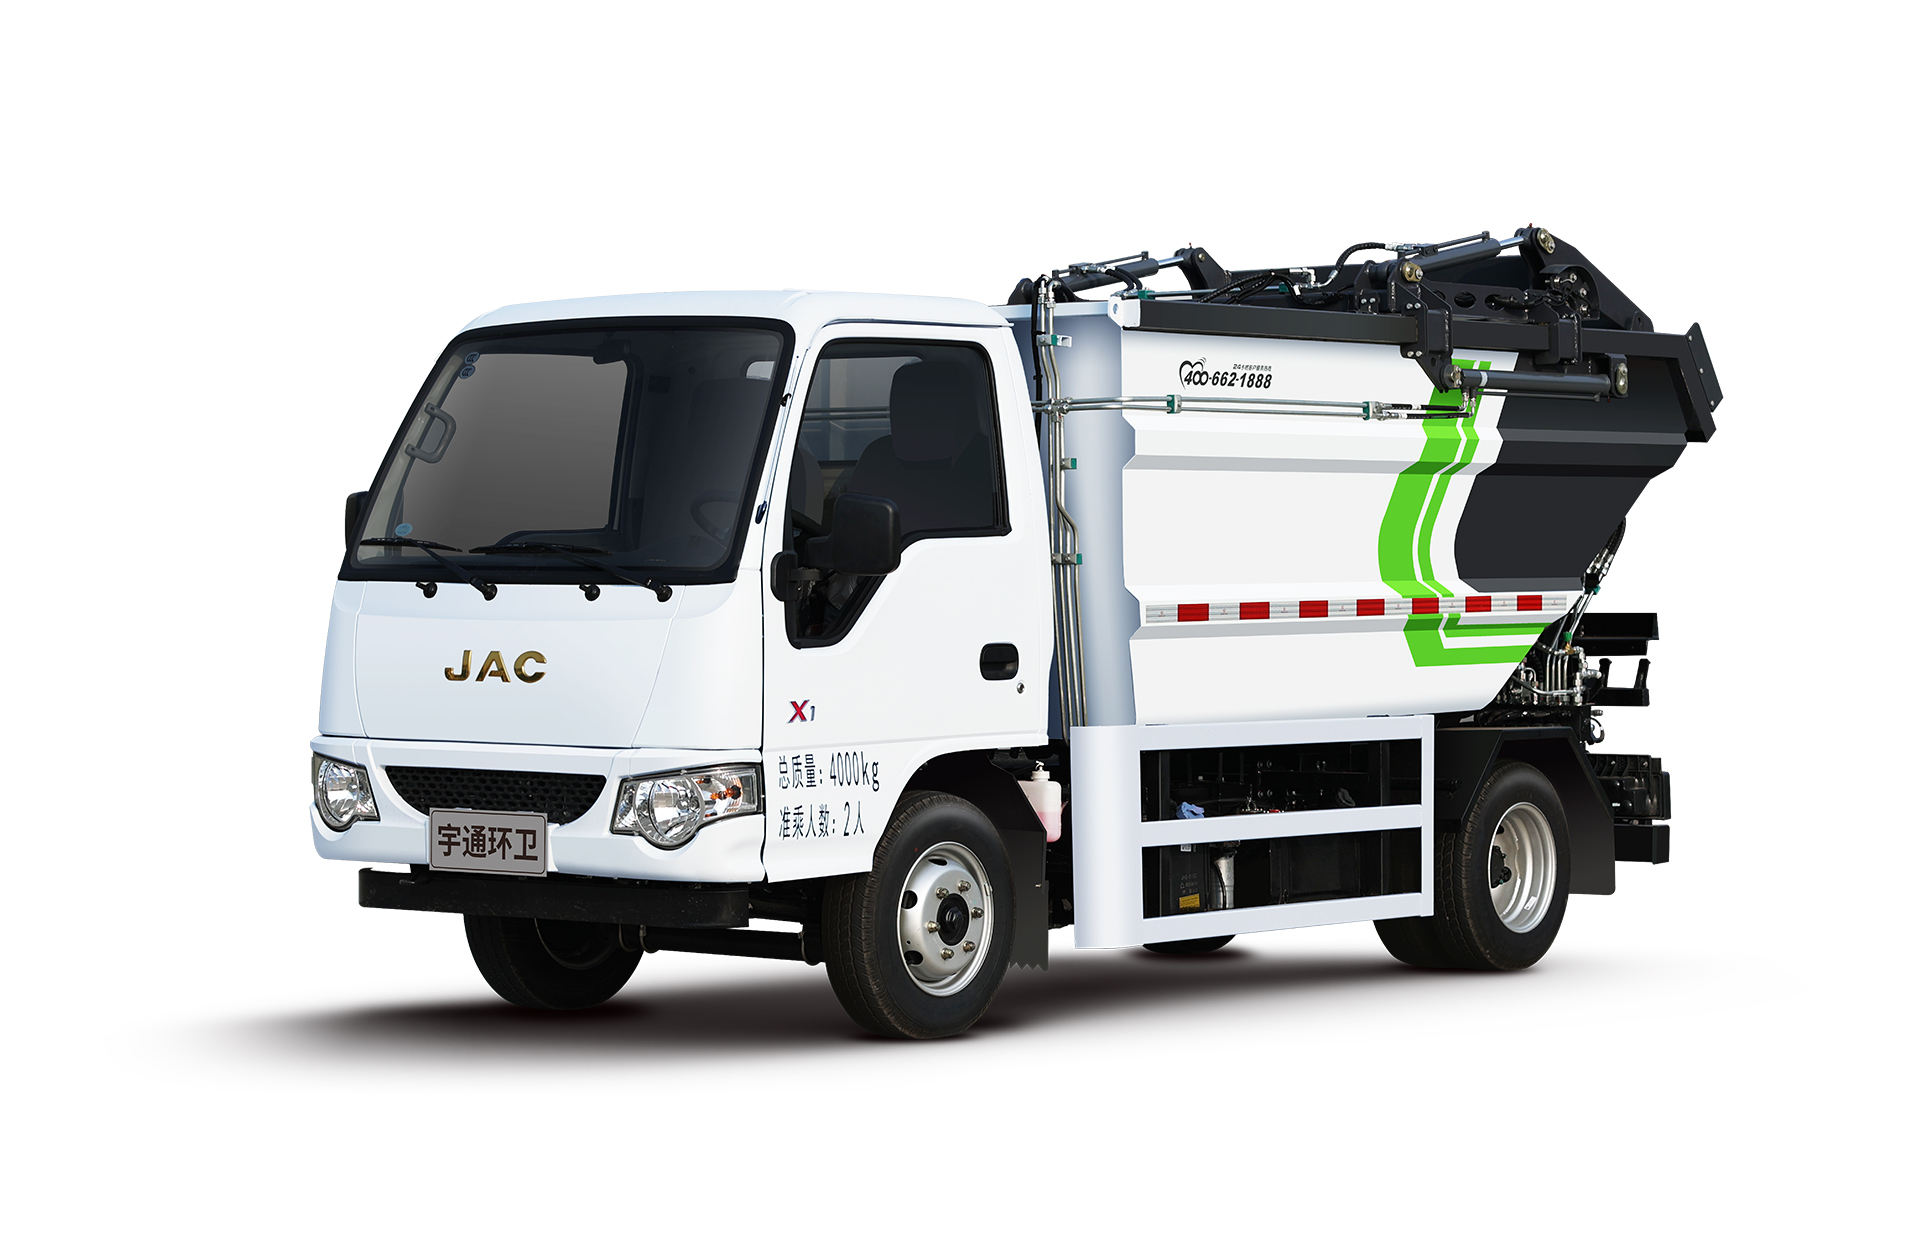 4t自裝卸式垃圾車 宇通環衛自裝卸式垃圾車主要具備小巧靈活、密封性、裝載能力強等主要特點。